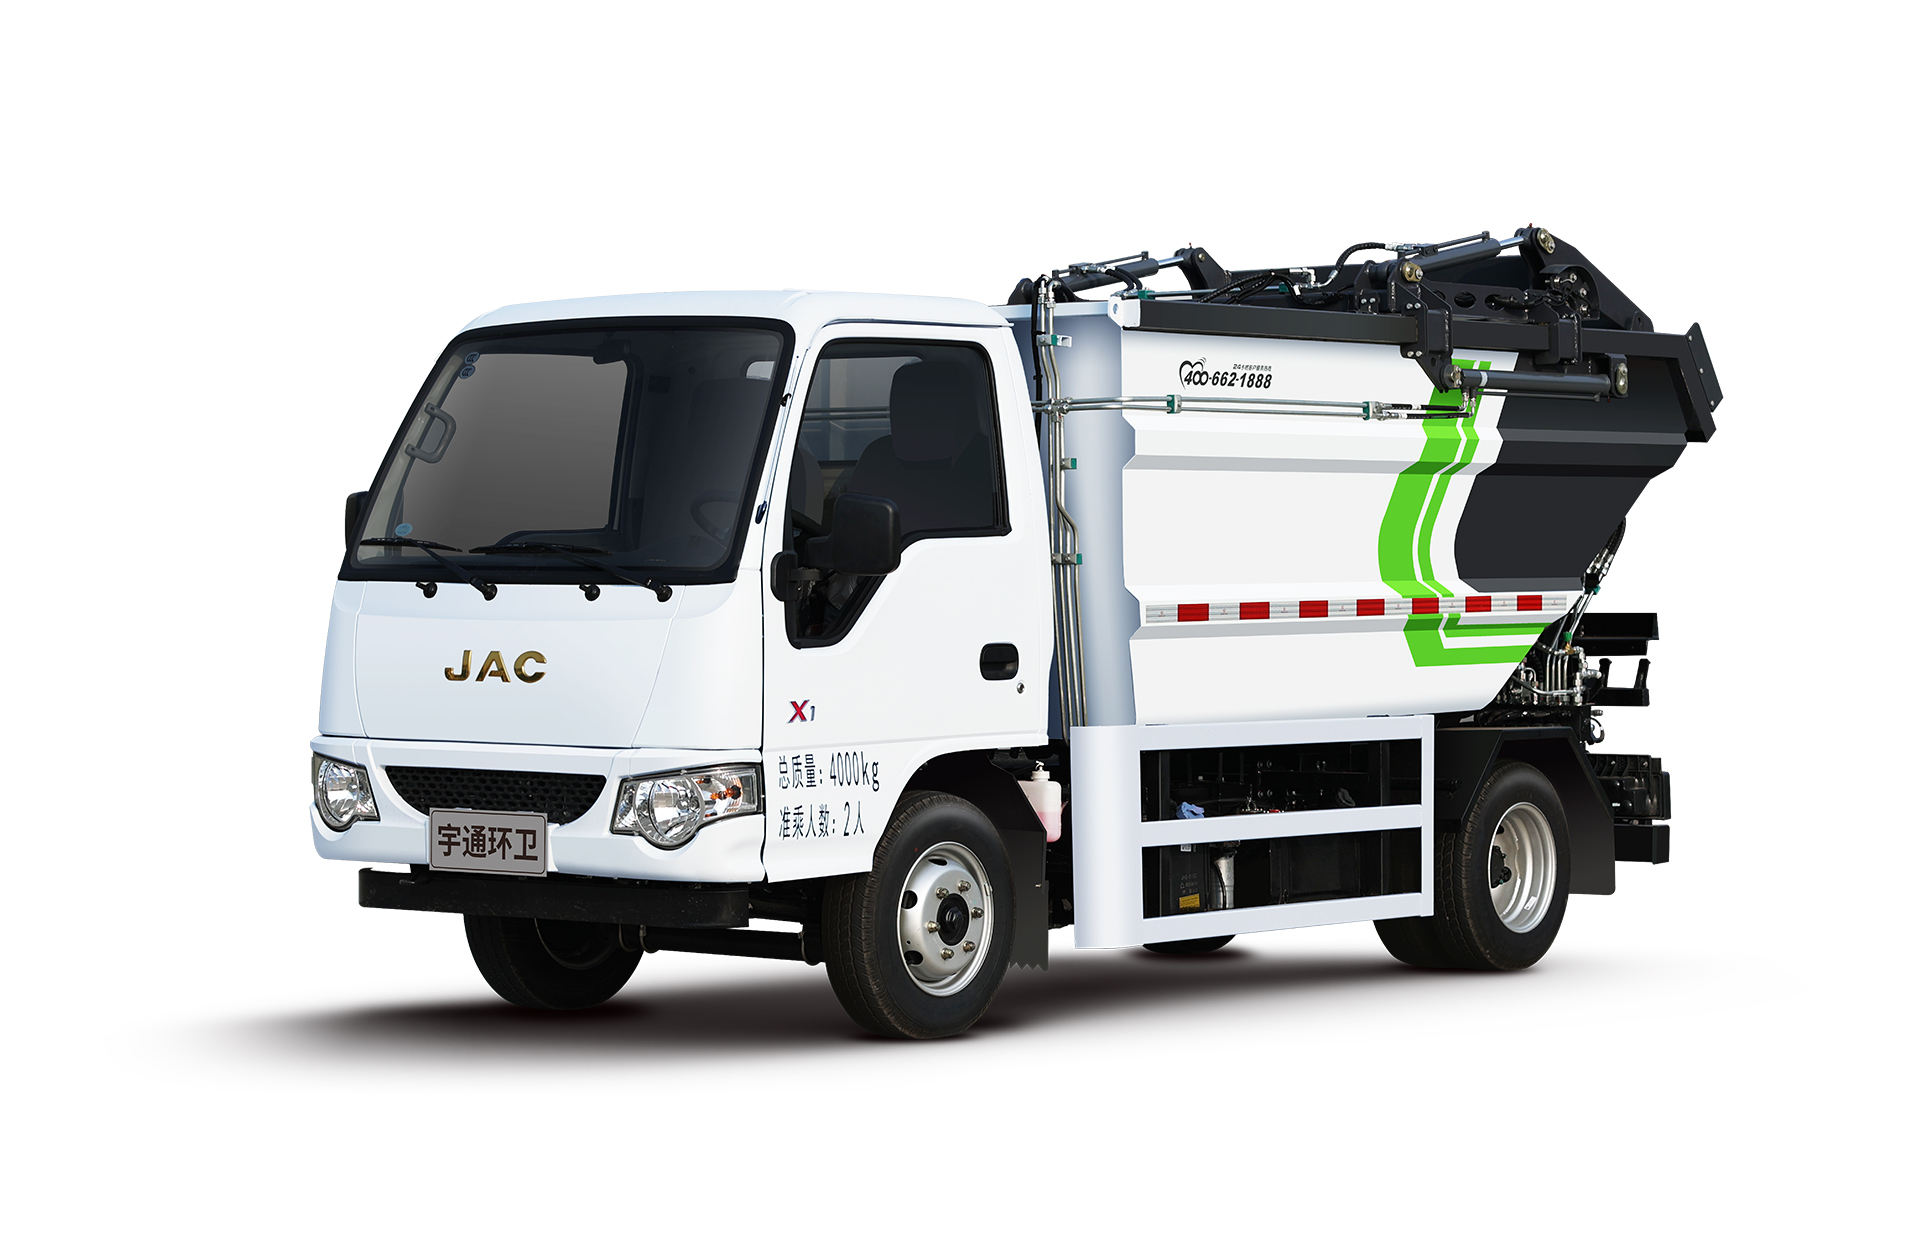 4t自裝卸式垃圾車 宇通環衛自裝卸式垃圾車主要具備小巧靈活、密封性、裝載能力強等主要特點。